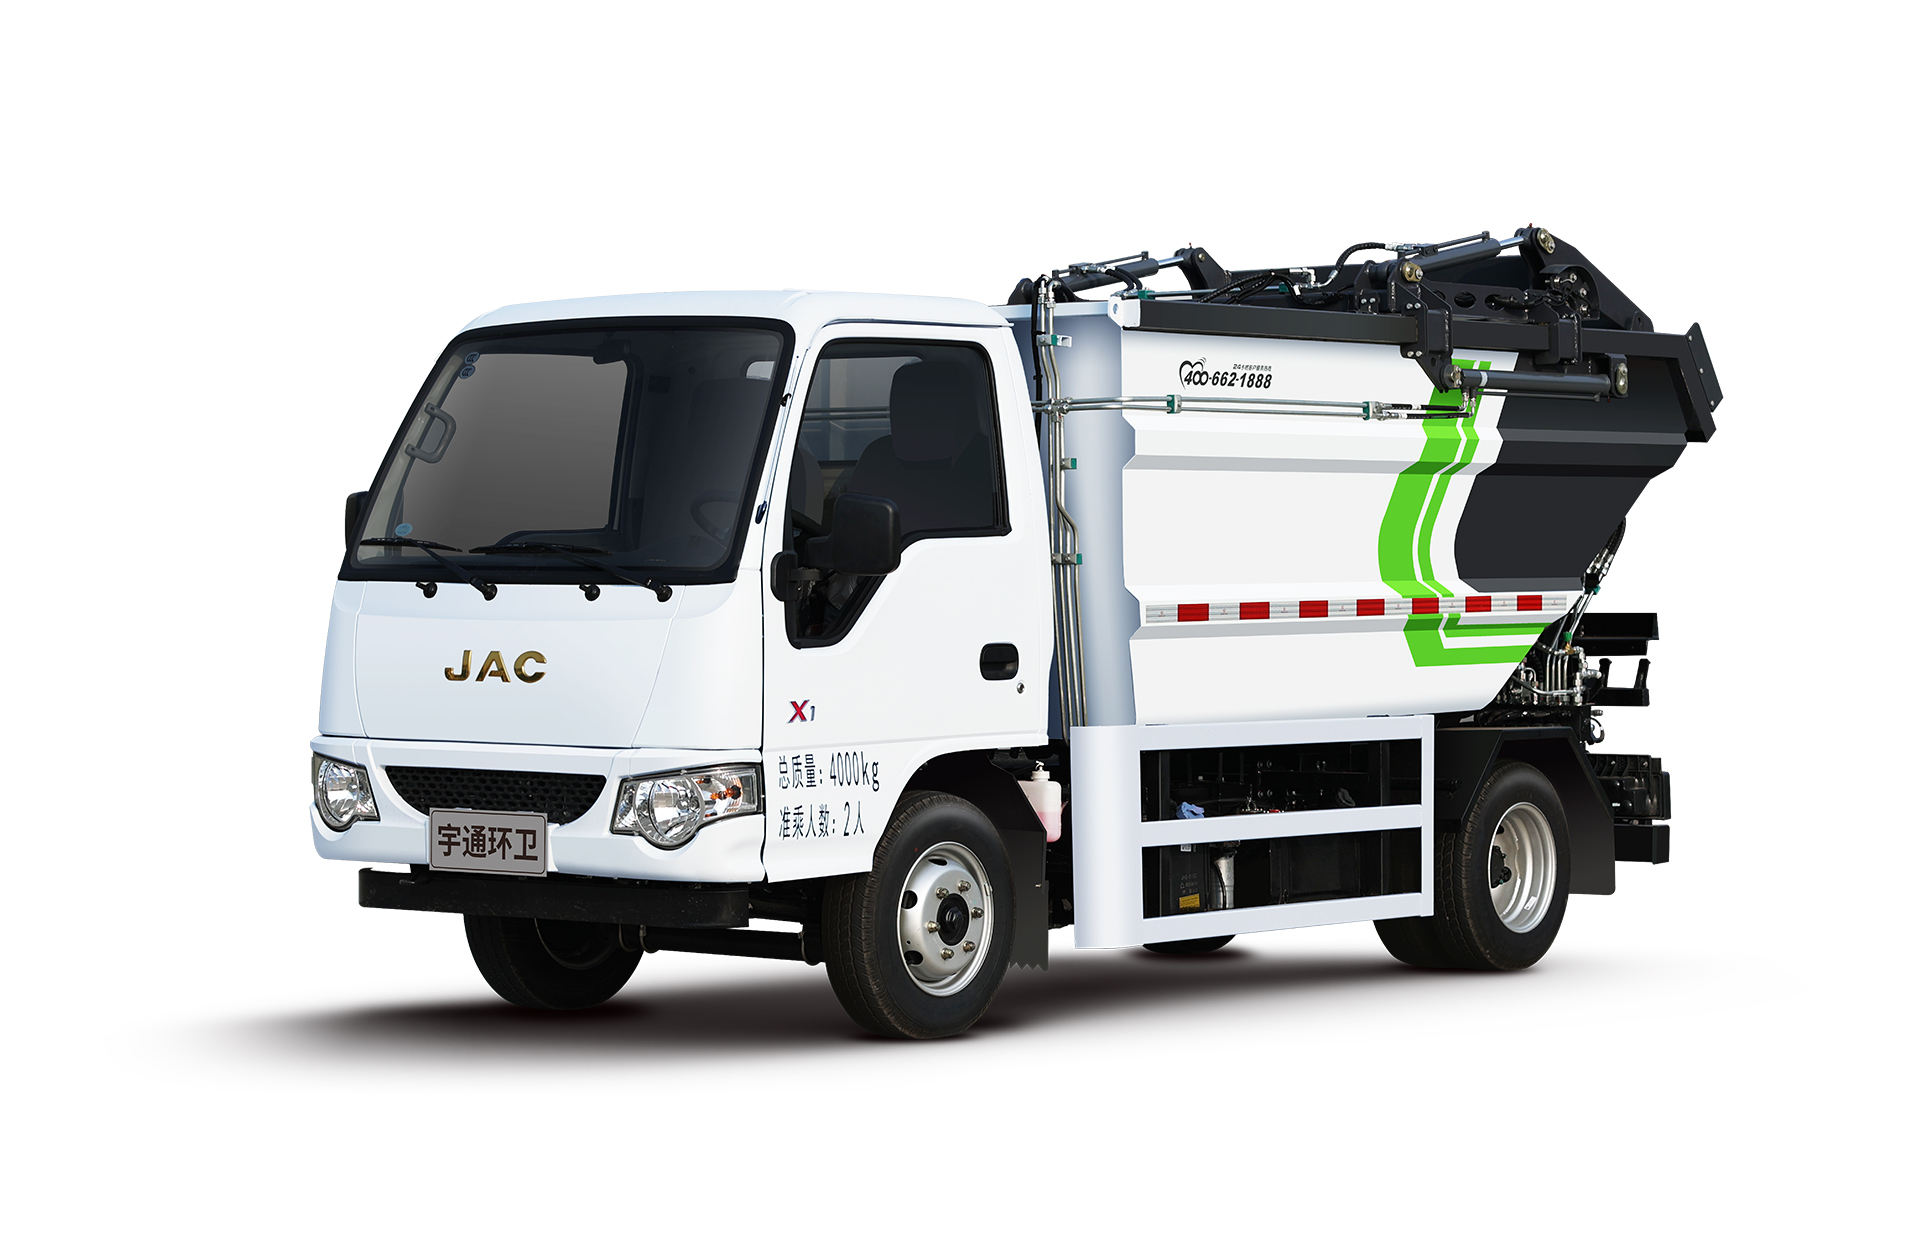 4t自裝卸式垃圾車 宇通環衛自裝卸式垃圾車主要具備小巧靈活、密封性、裝載能力強等主要特點。